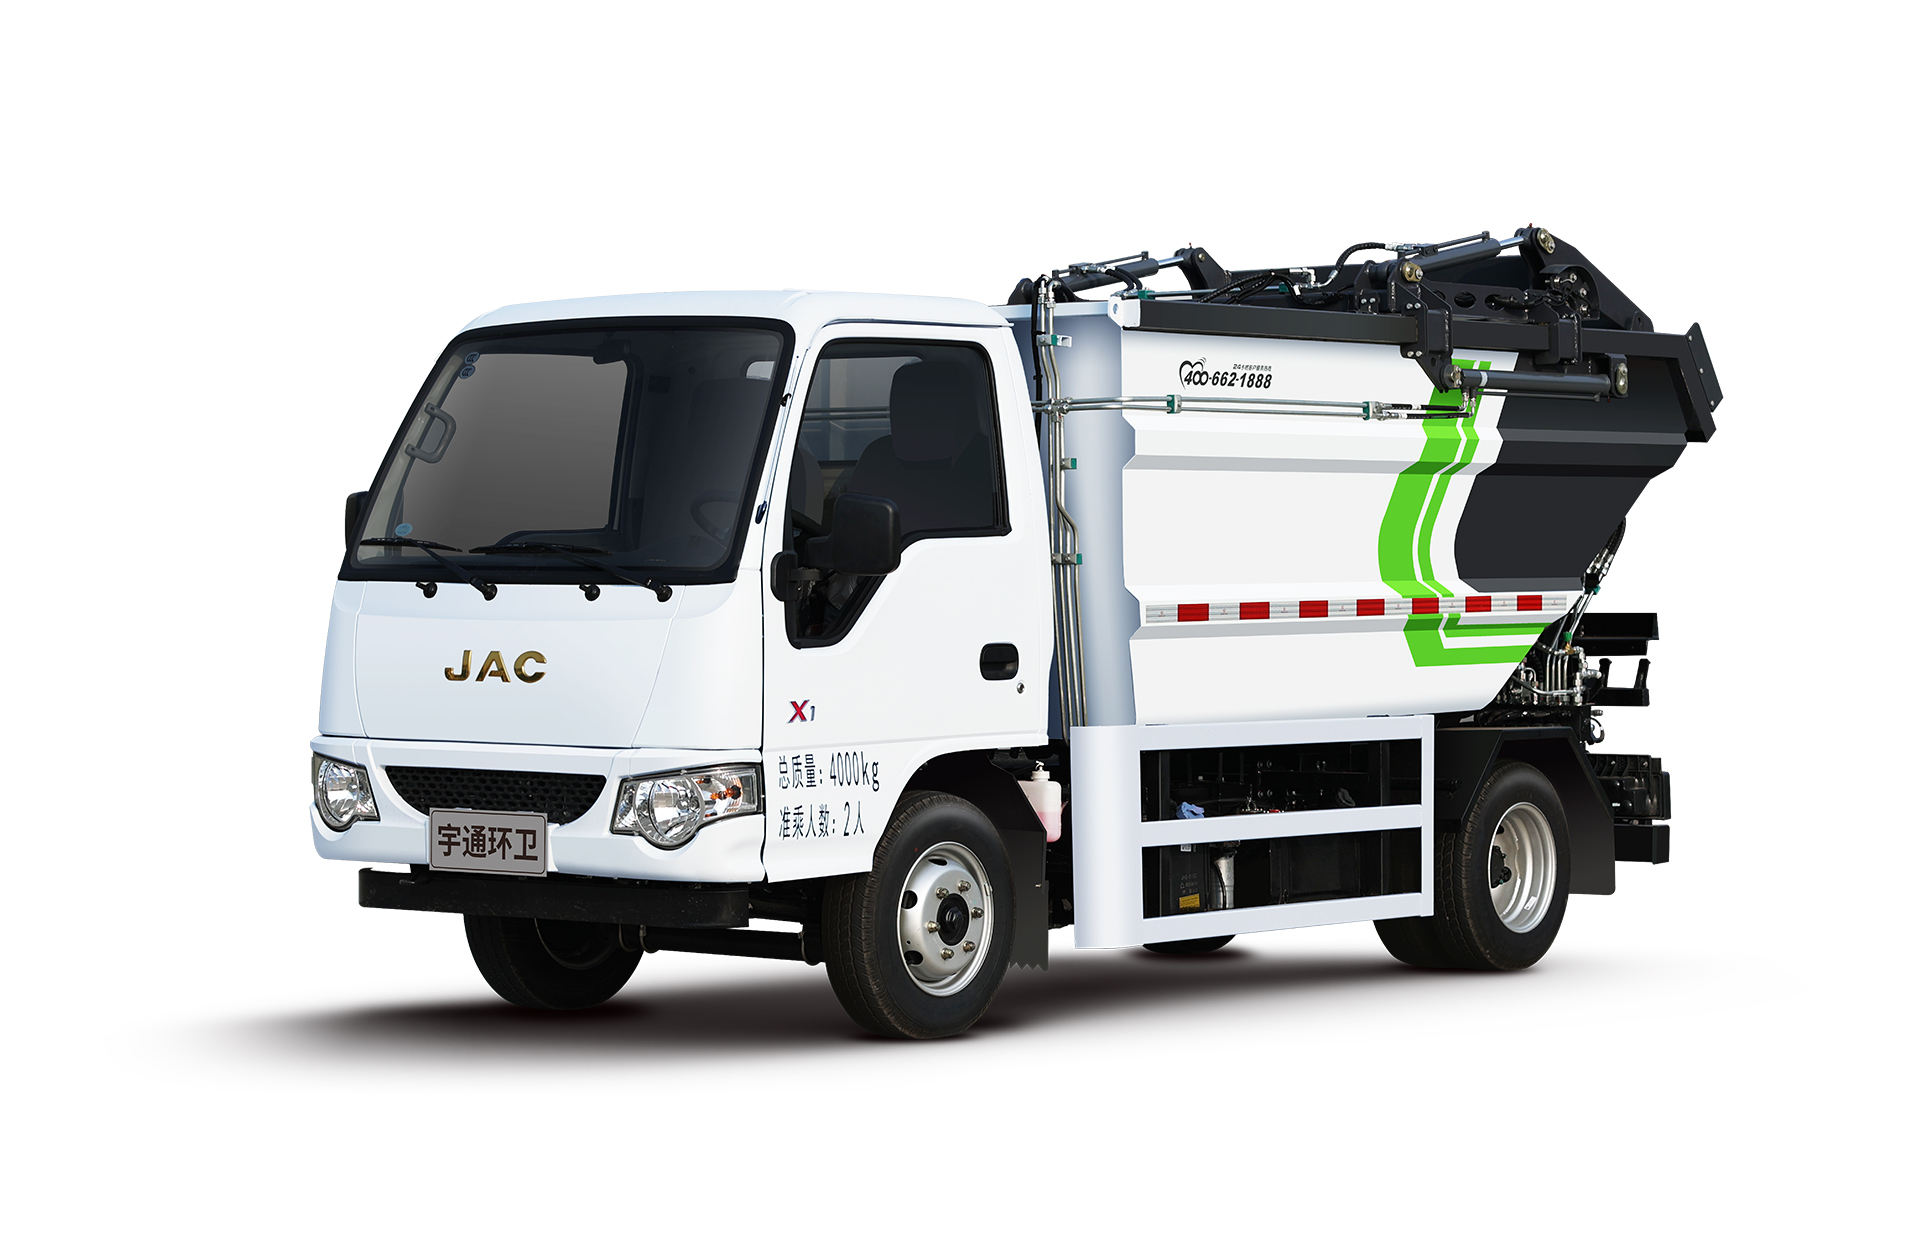 4t自裝卸式垃圾車 宇通環衛自裝卸式垃圾車主要具備小巧靈活、密封性、裝載能力強等主要特點。